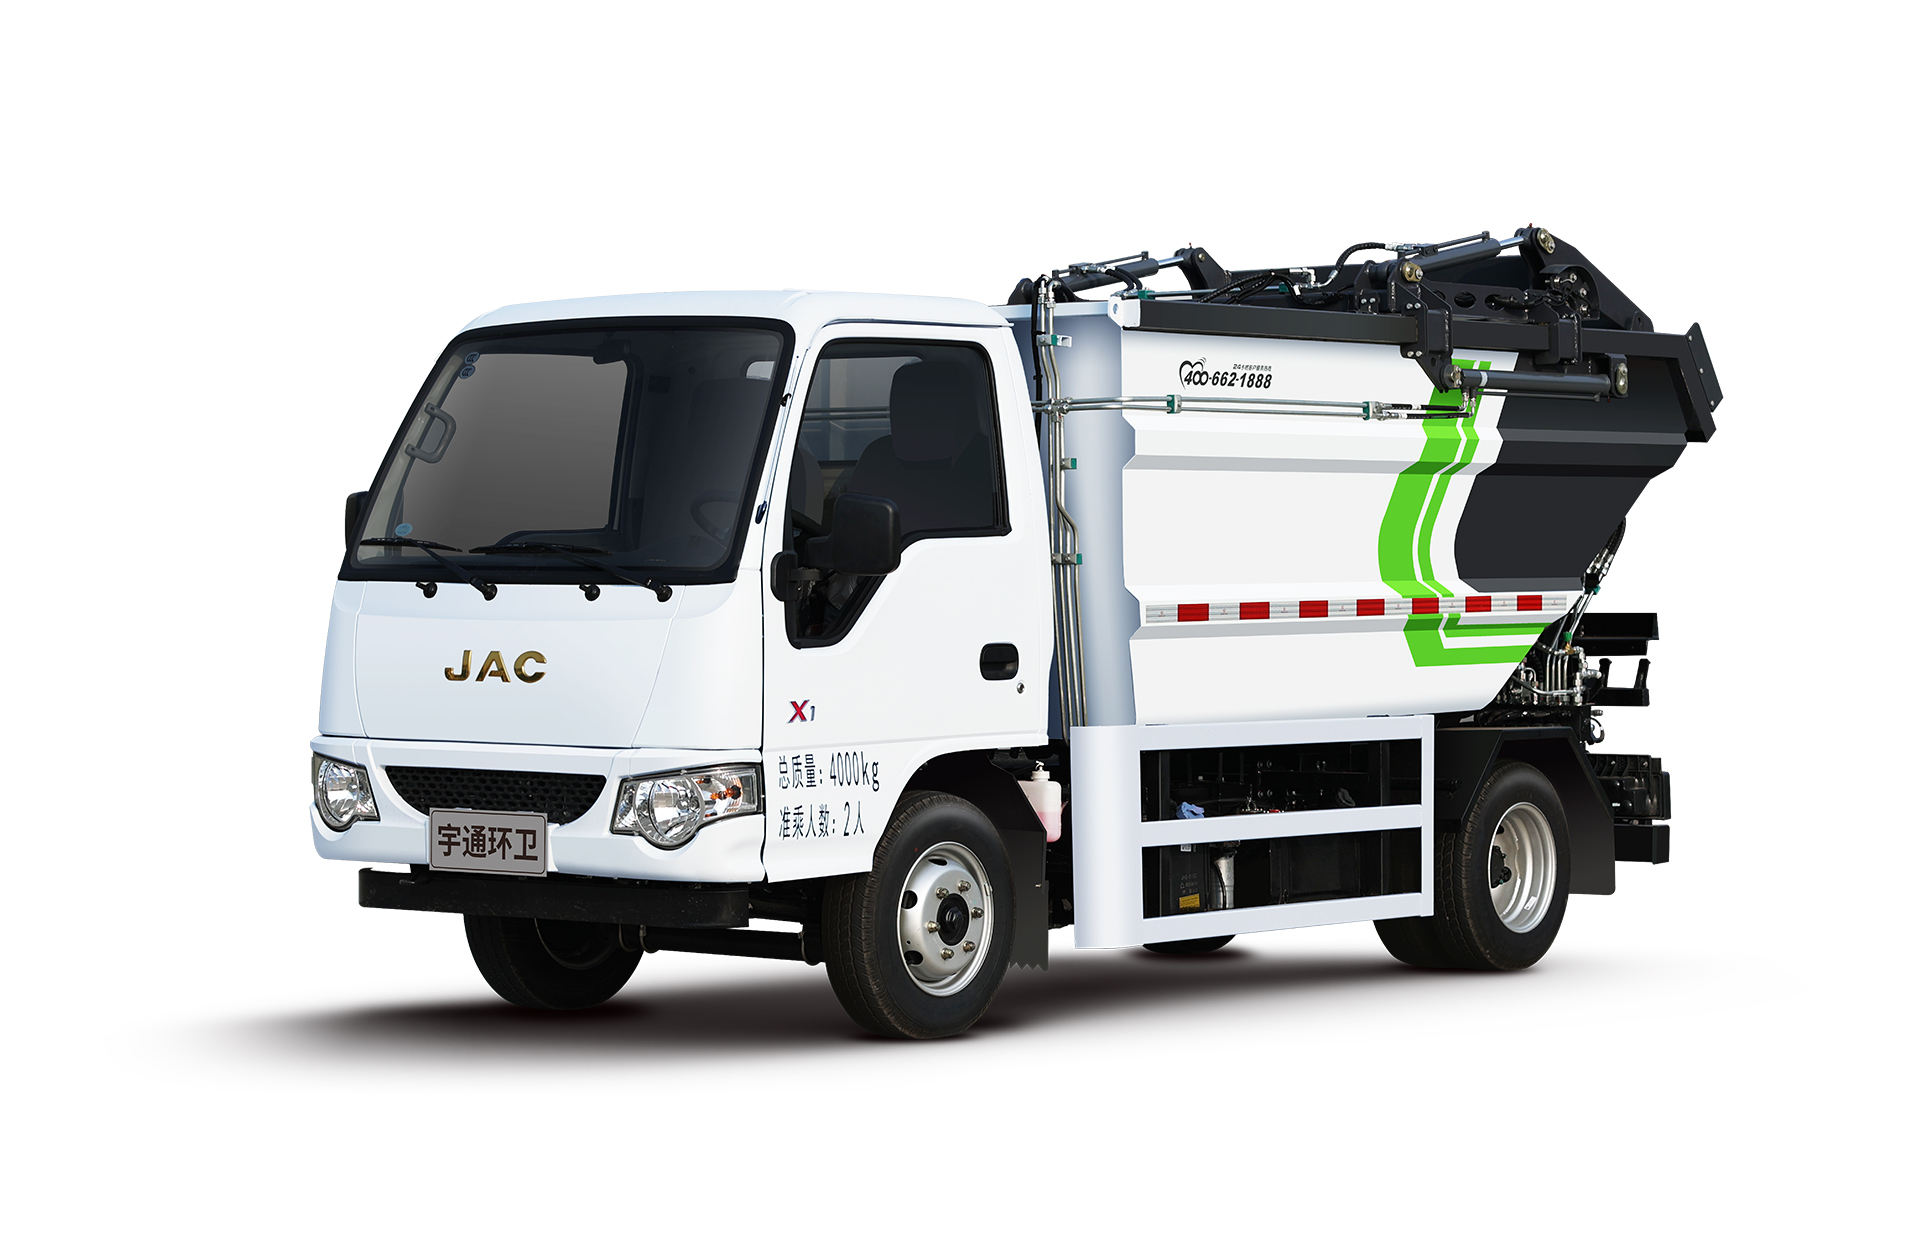 4t自裝卸式垃圾車 宇通環衛自裝卸式垃圾車主要具備小巧靈活、密封性、裝載能力強等主要特點。